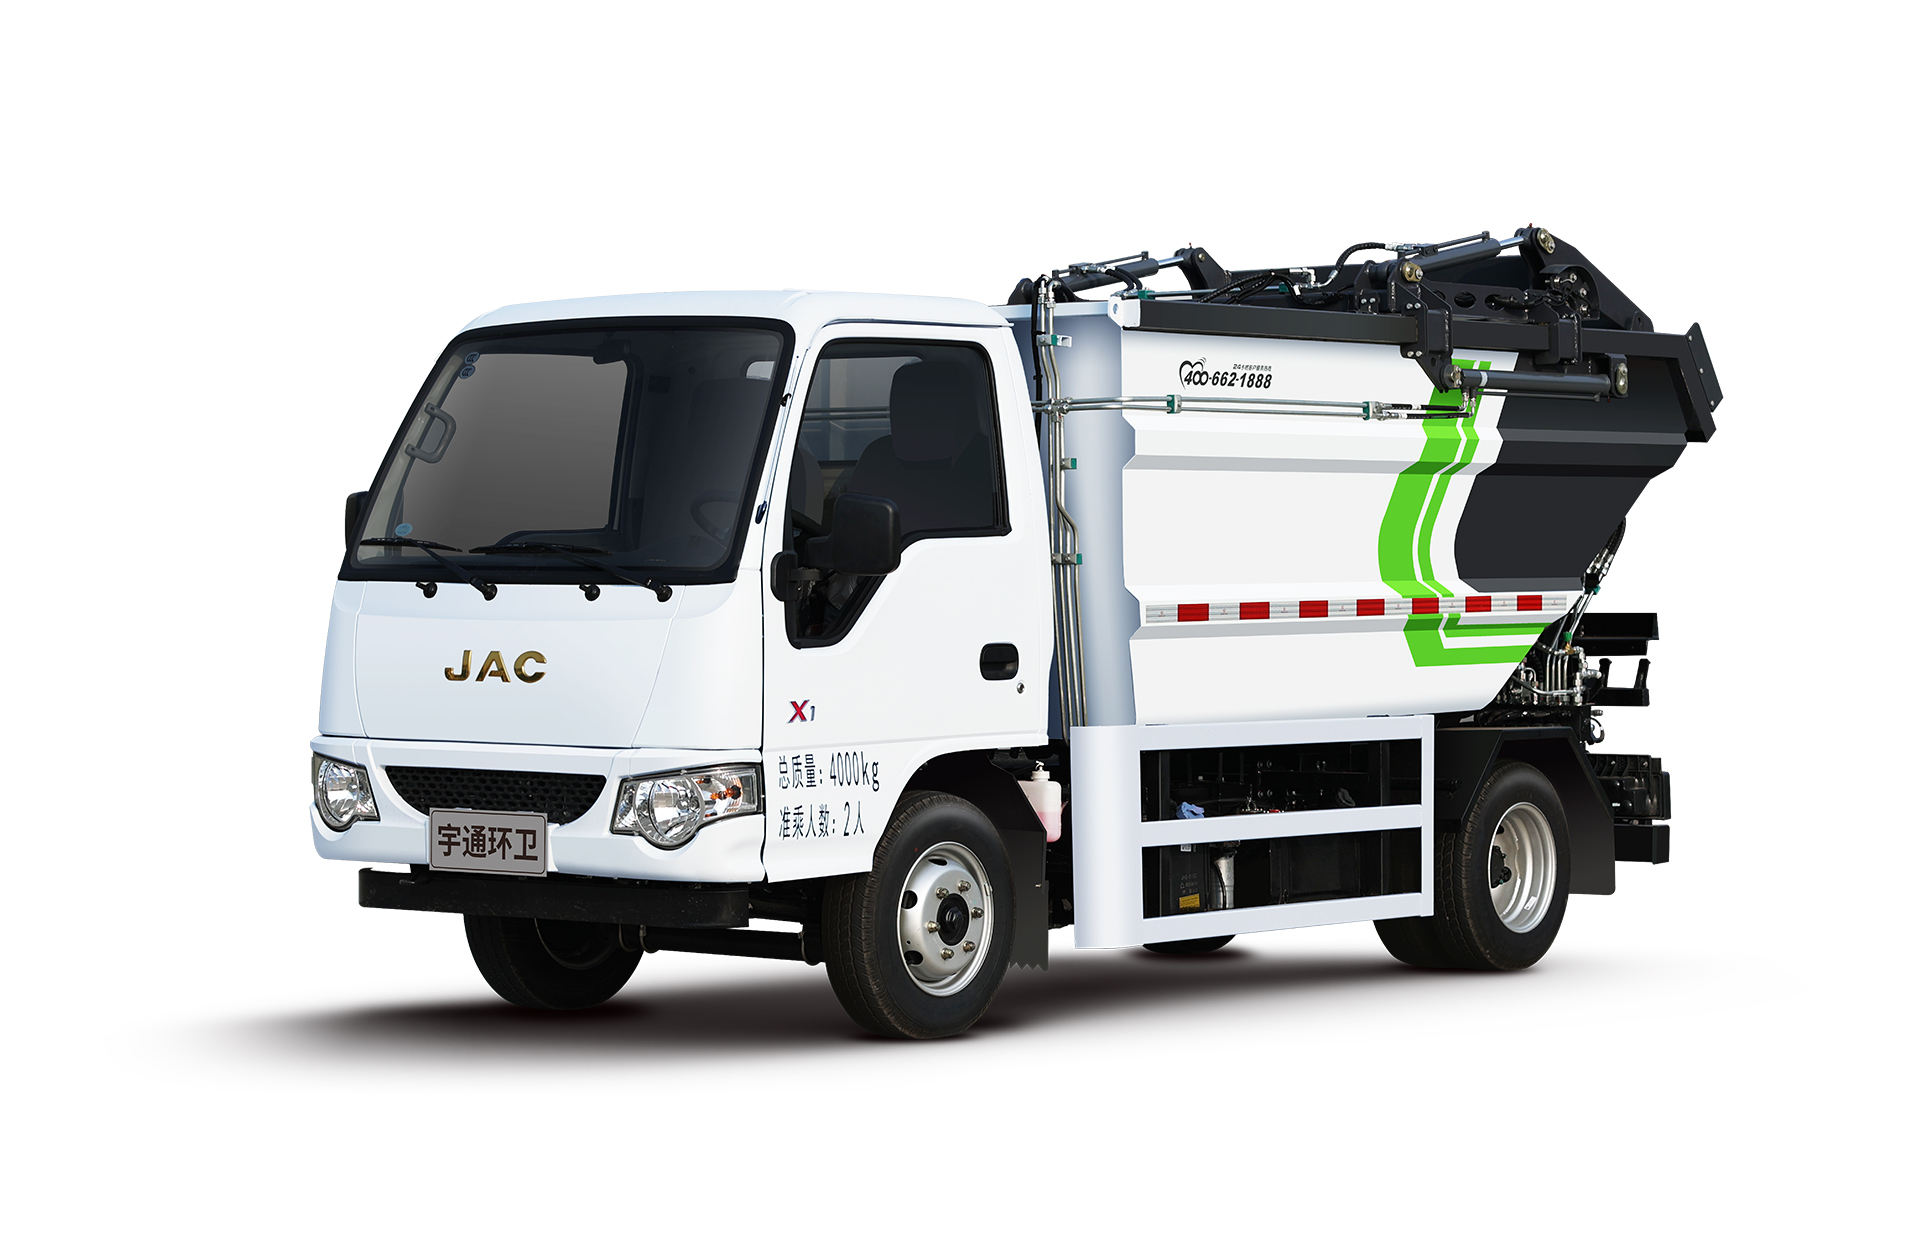 4t自裝卸式垃圾車 宇通環衛自裝卸式垃圾車主要具備小巧靈活、密封性、裝載能力強等主要特點。